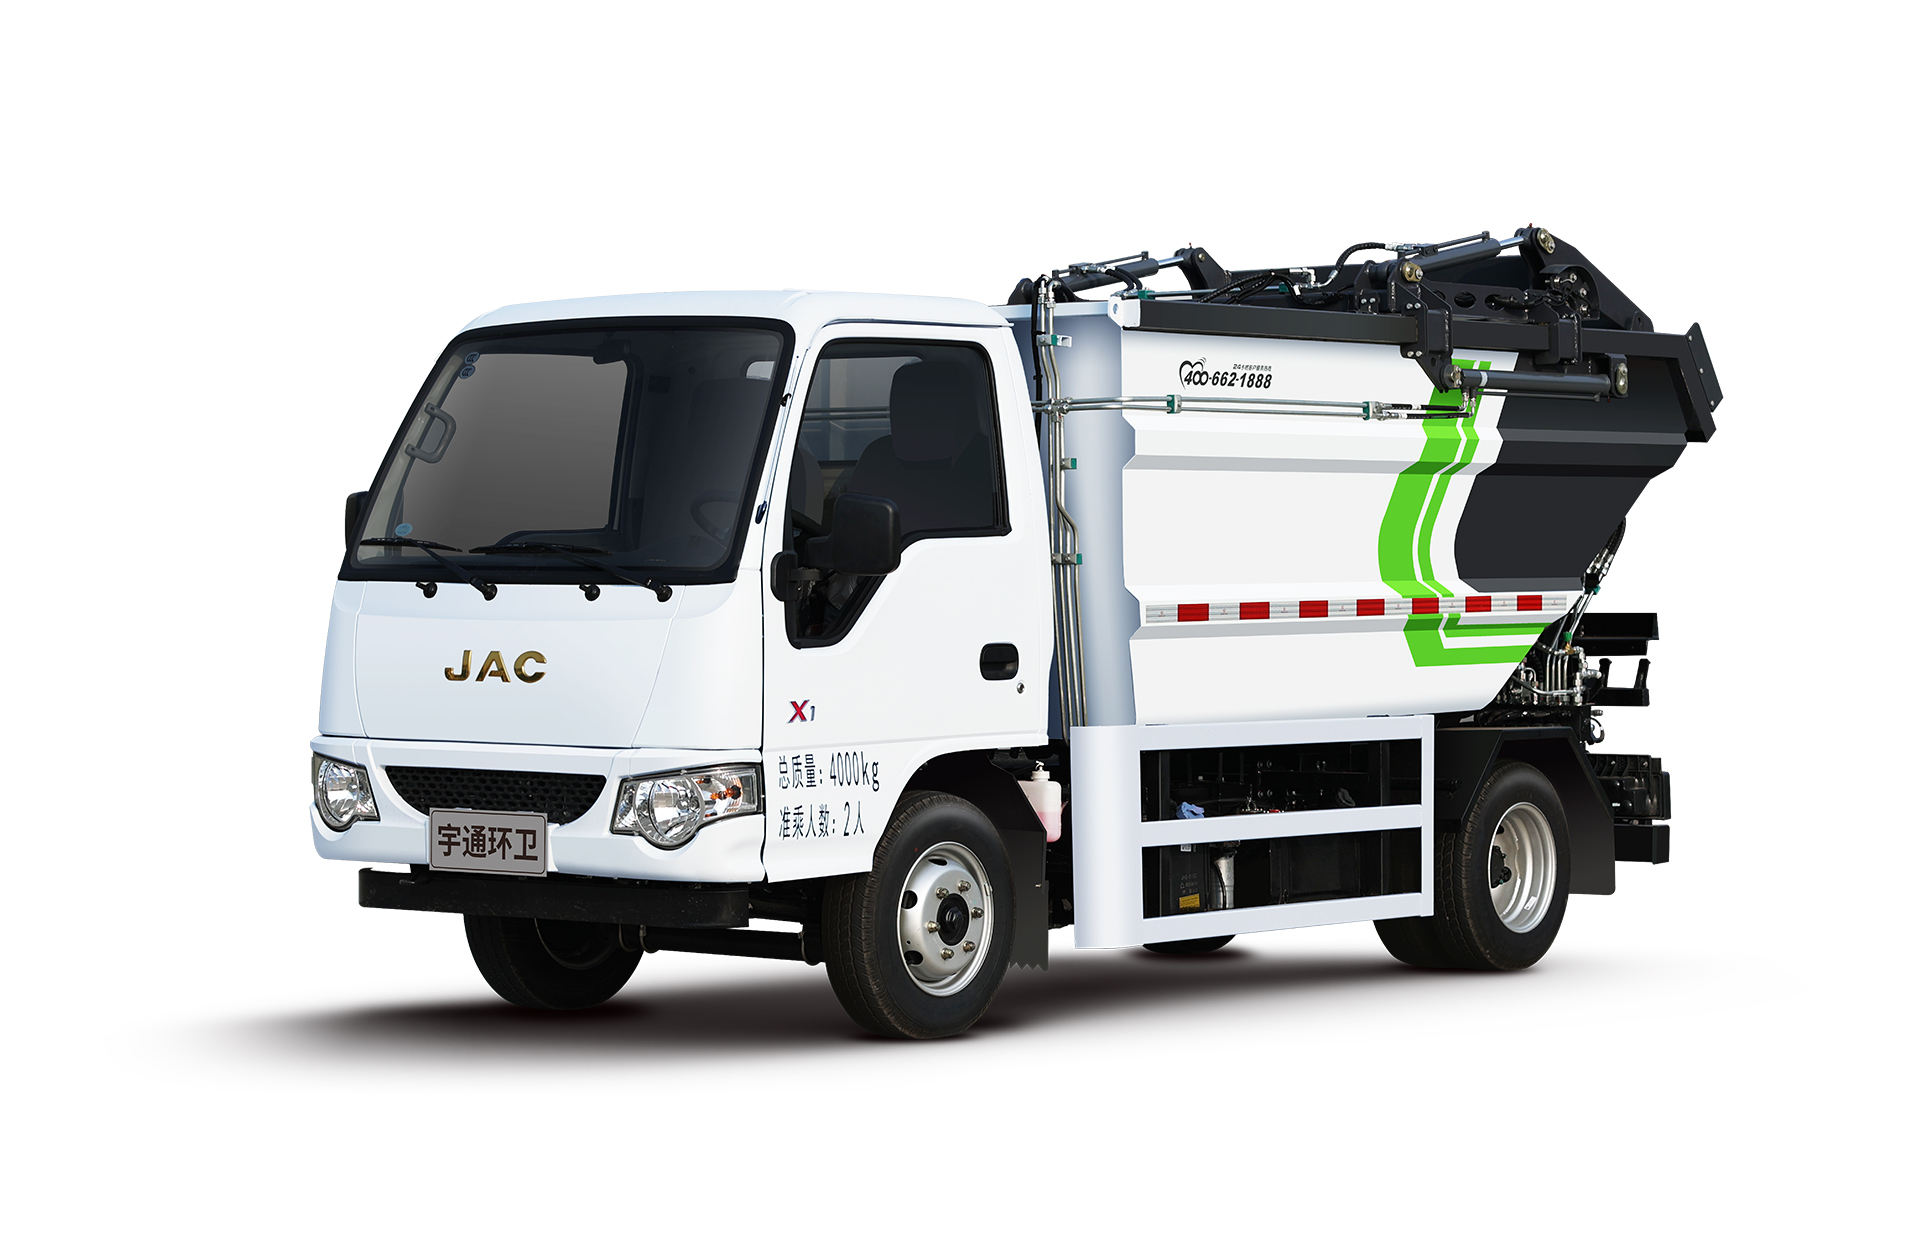 4t自裝卸式垃圾車 宇通環衛自裝卸式垃圾車主要具備小巧靈活、密封性、裝載能力強等主要特點。